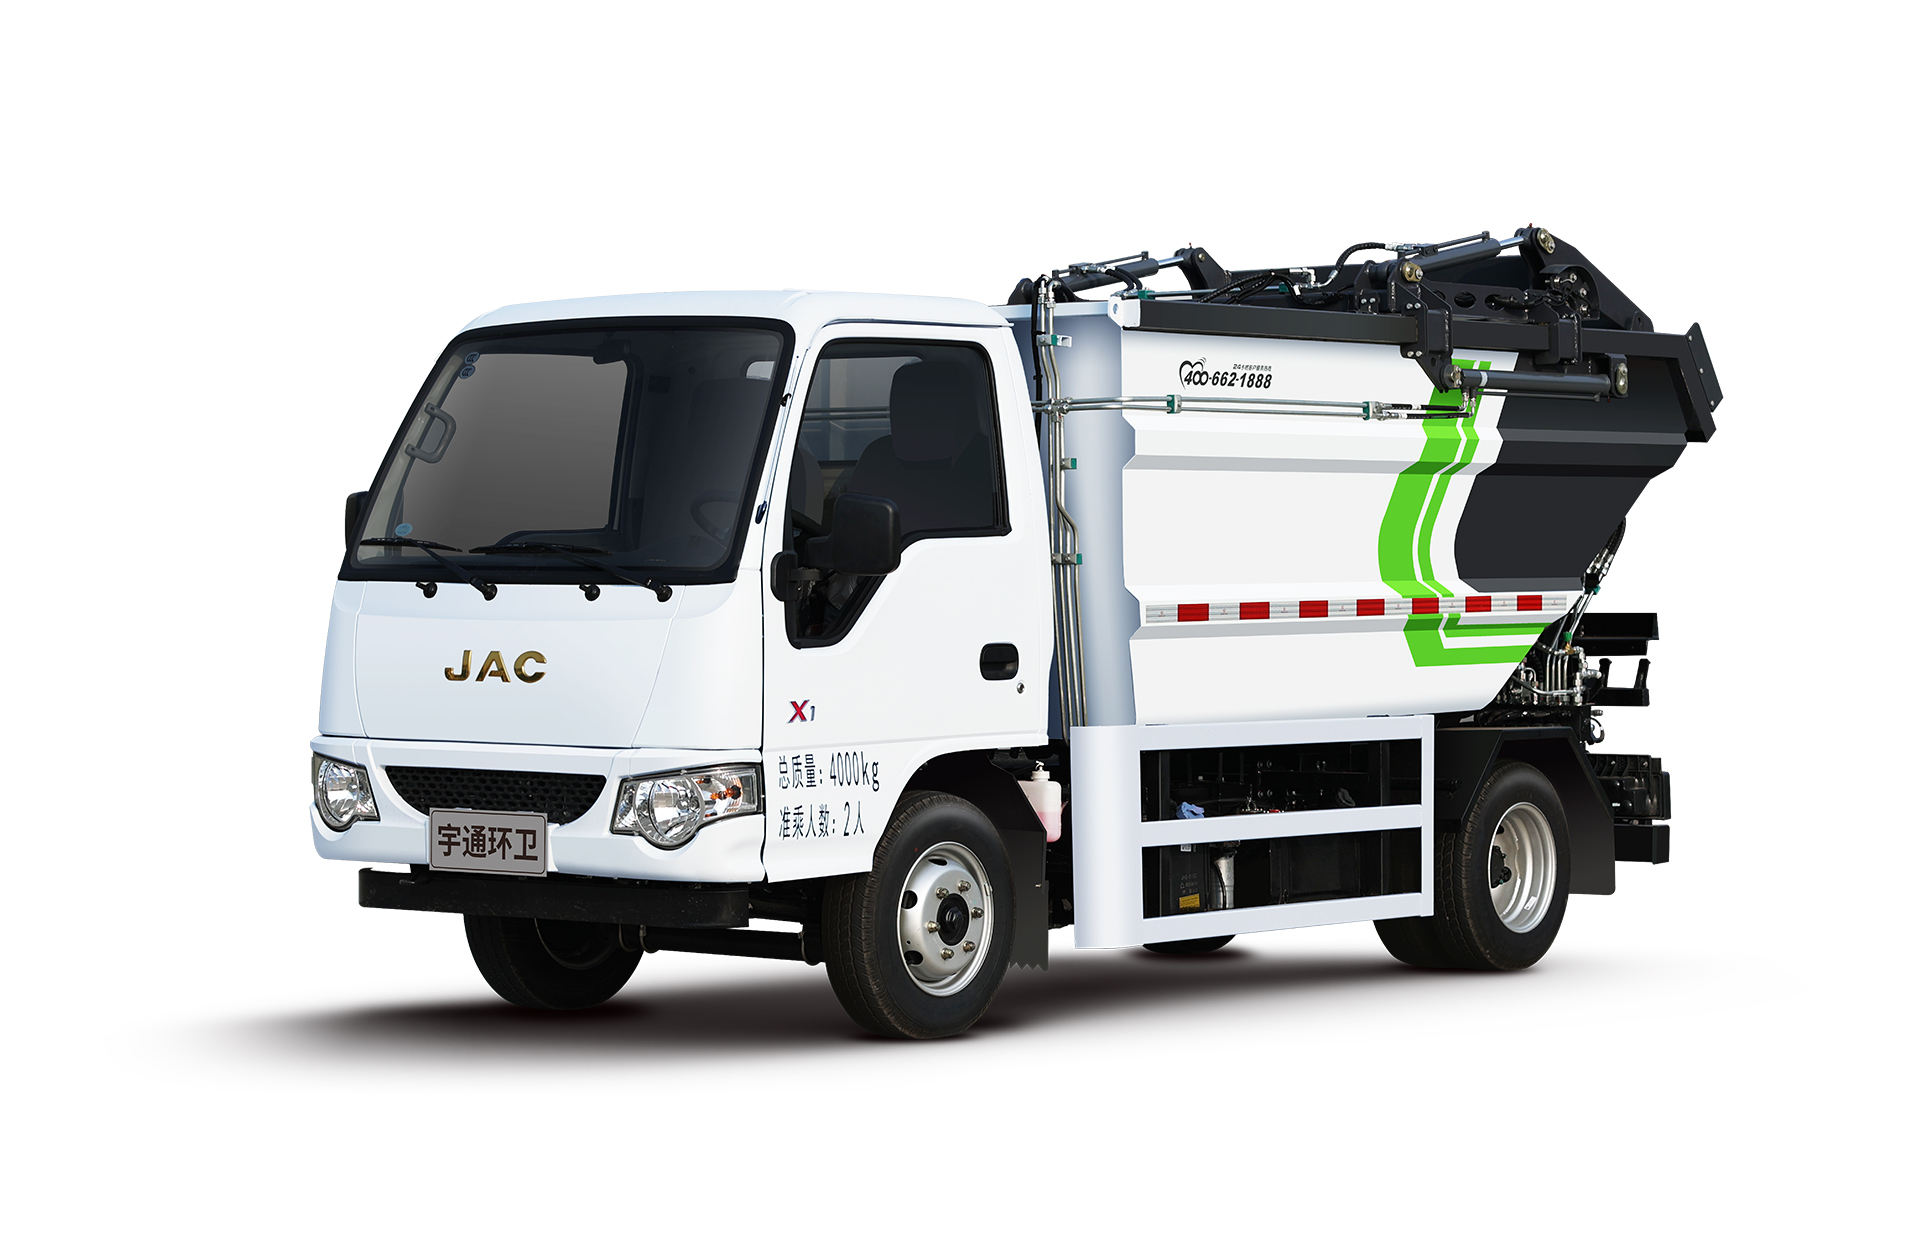 4t自裝卸式垃圾車 宇通環衛自裝卸式垃圾車主要具備小巧靈活、密封性、裝載能力強等主要特點。